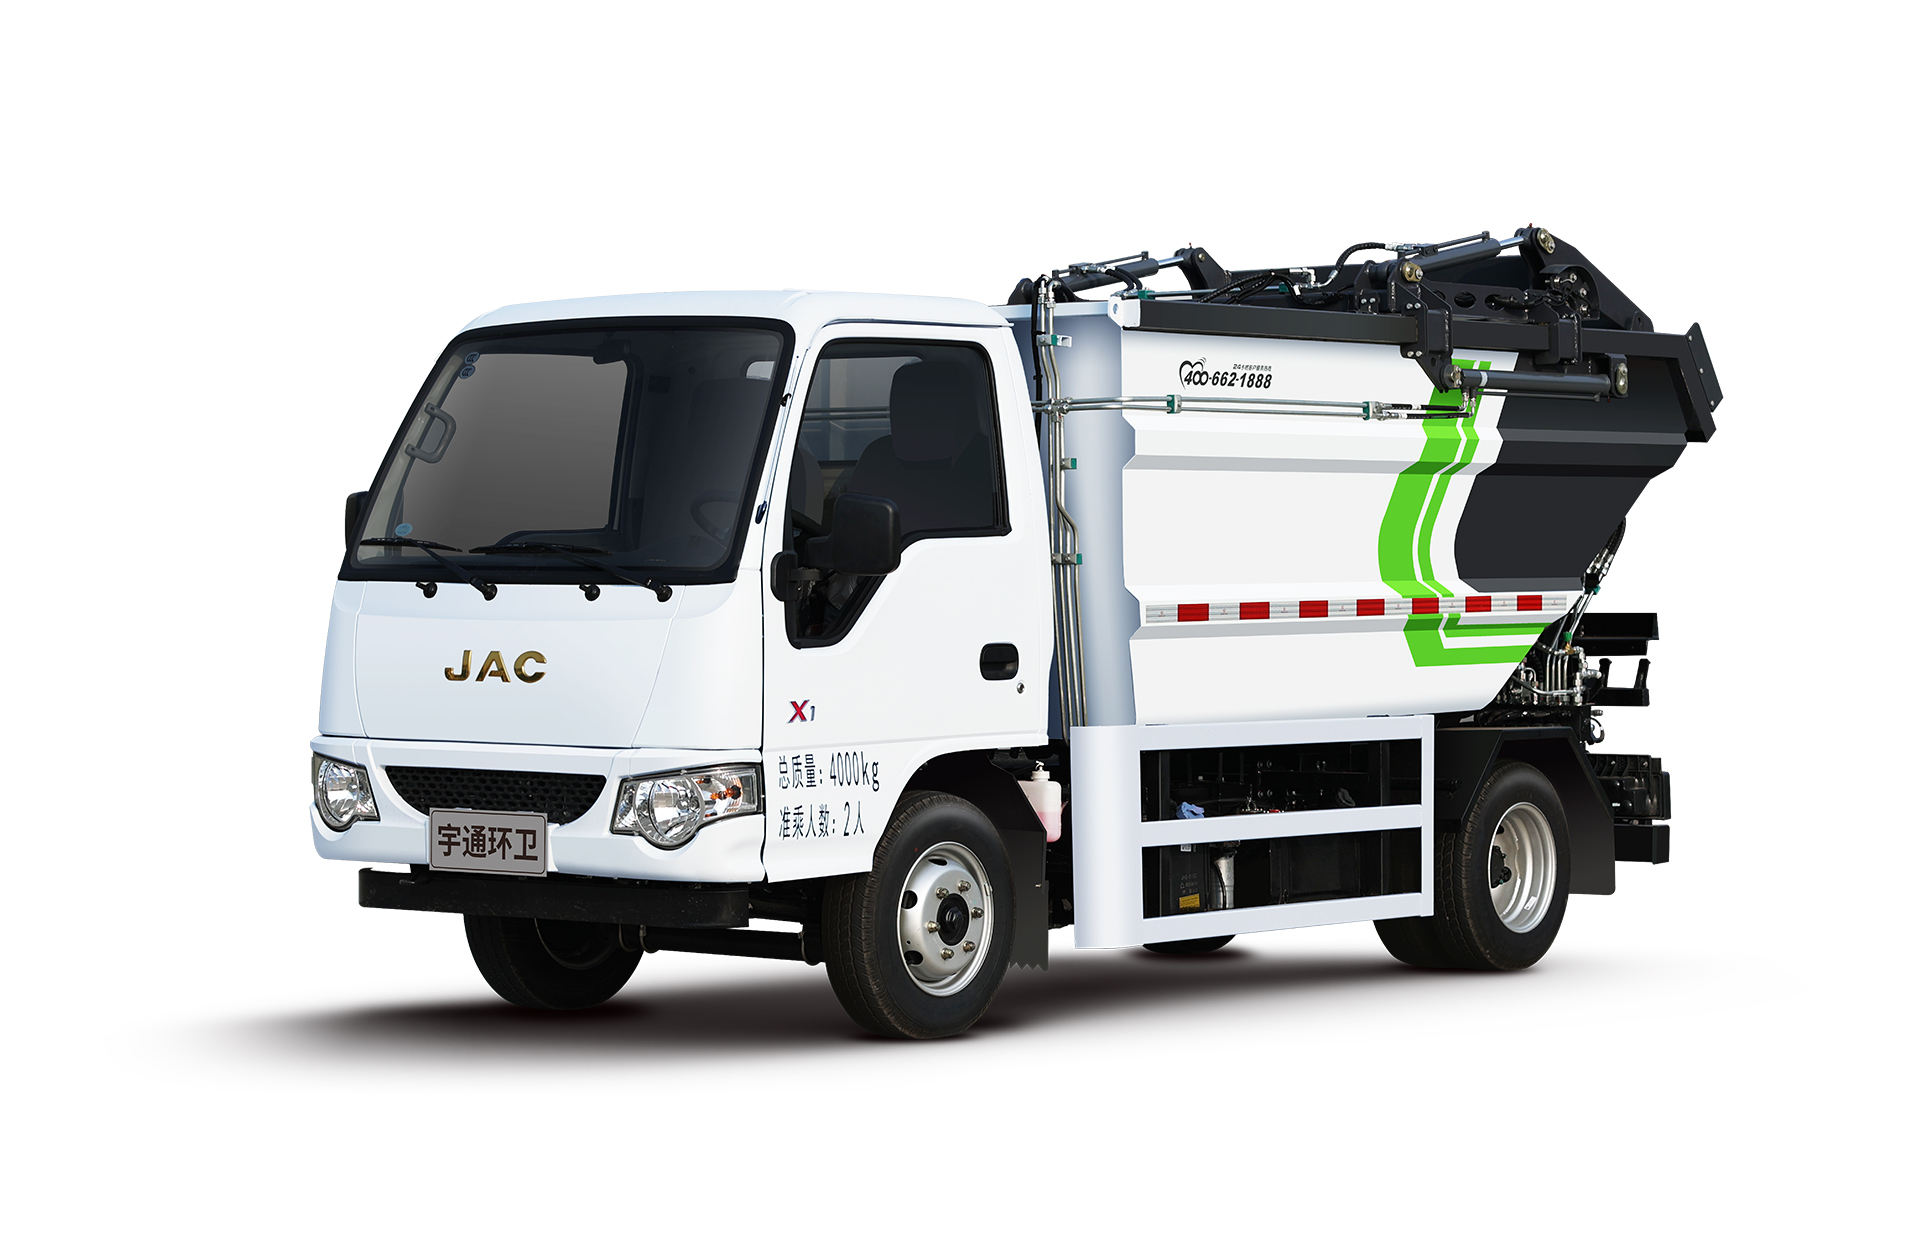 4t自裝卸式垃圾車 宇通環衛自裝卸式垃圾車主要具備小巧靈活、密封性、裝載能力強等主要特點。